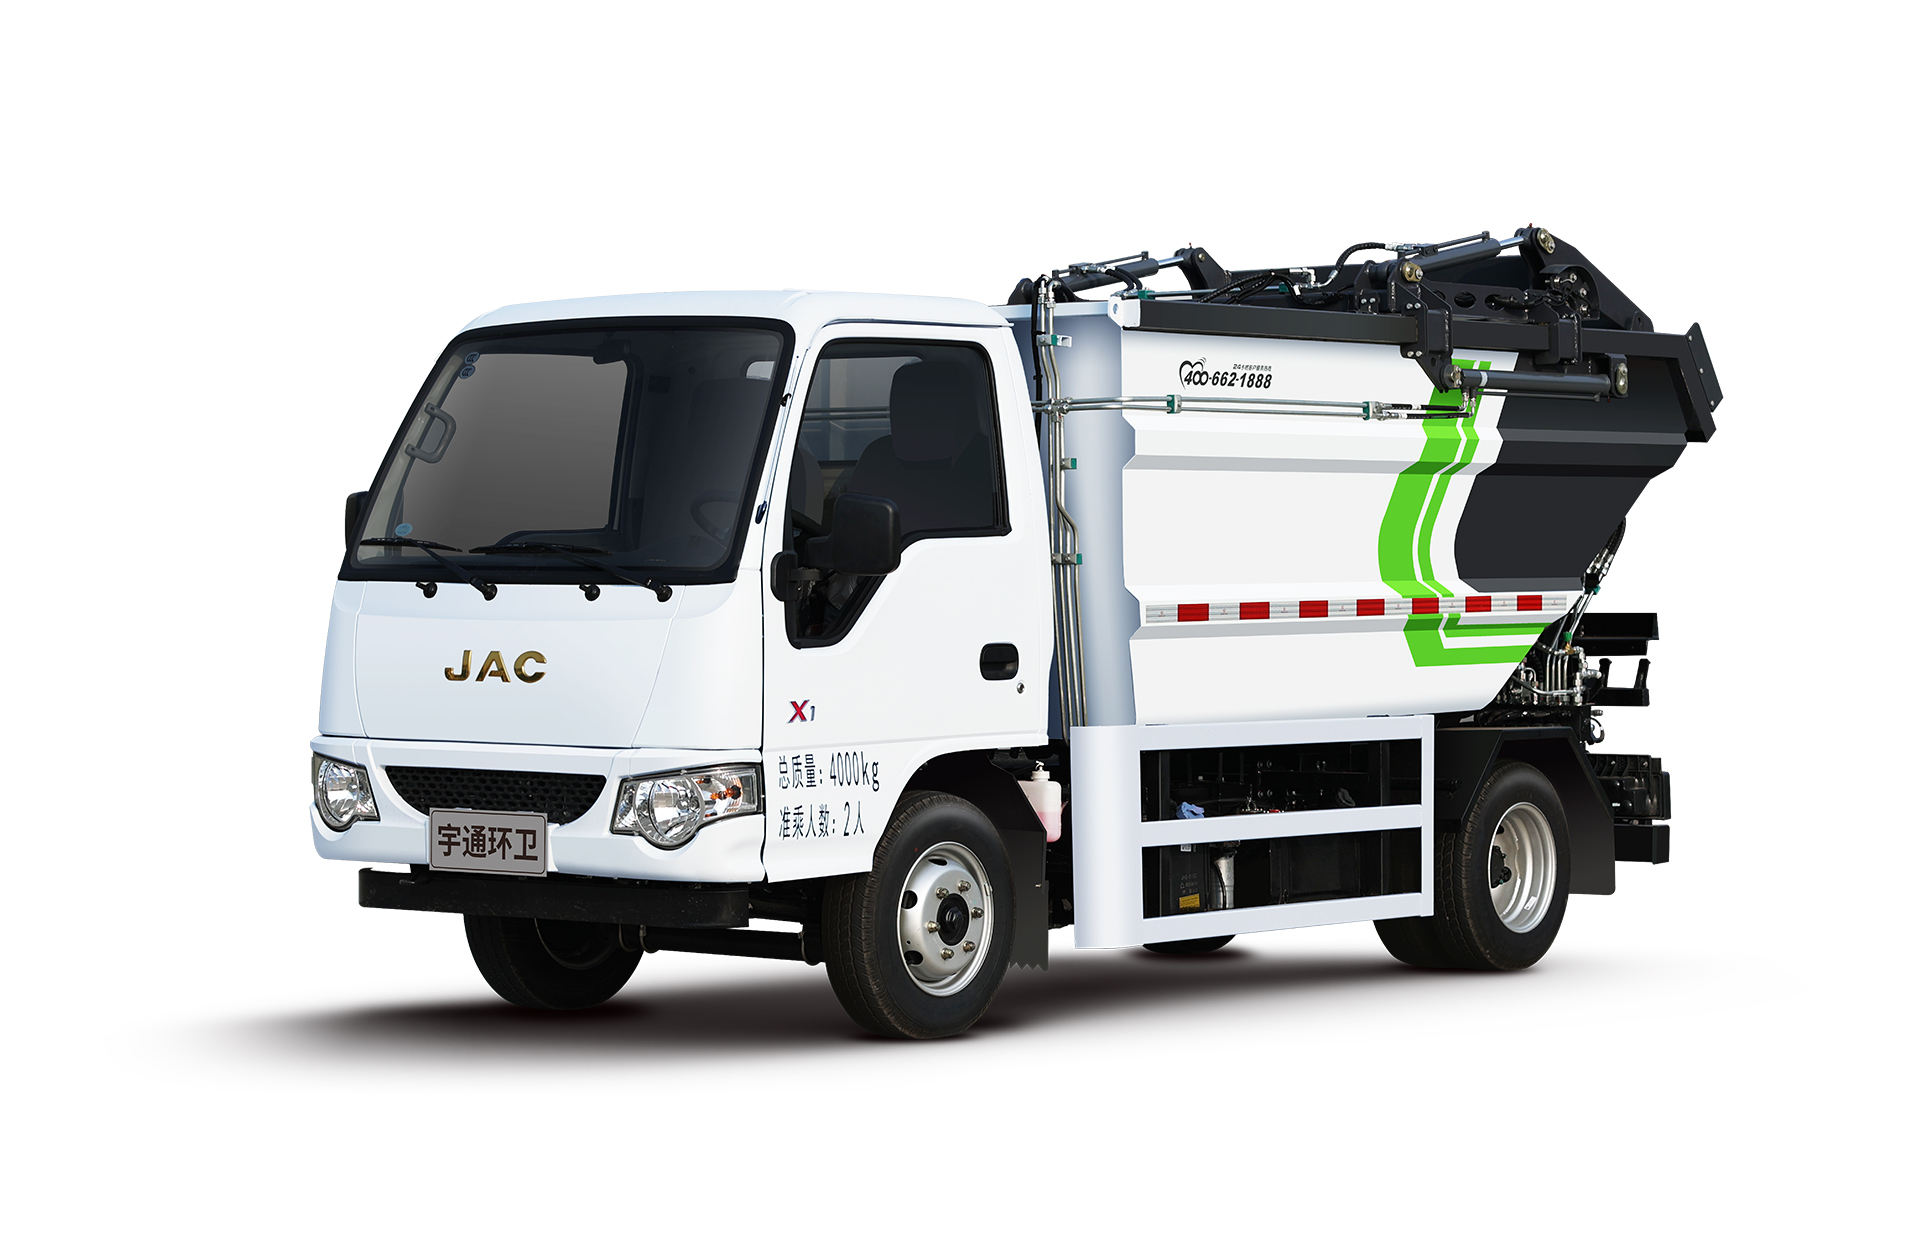 4t自裝卸式垃圾車 宇通環衛自裝卸式垃圾車主要具備小巧靈活、密封性、裝載能力強等主要特點。